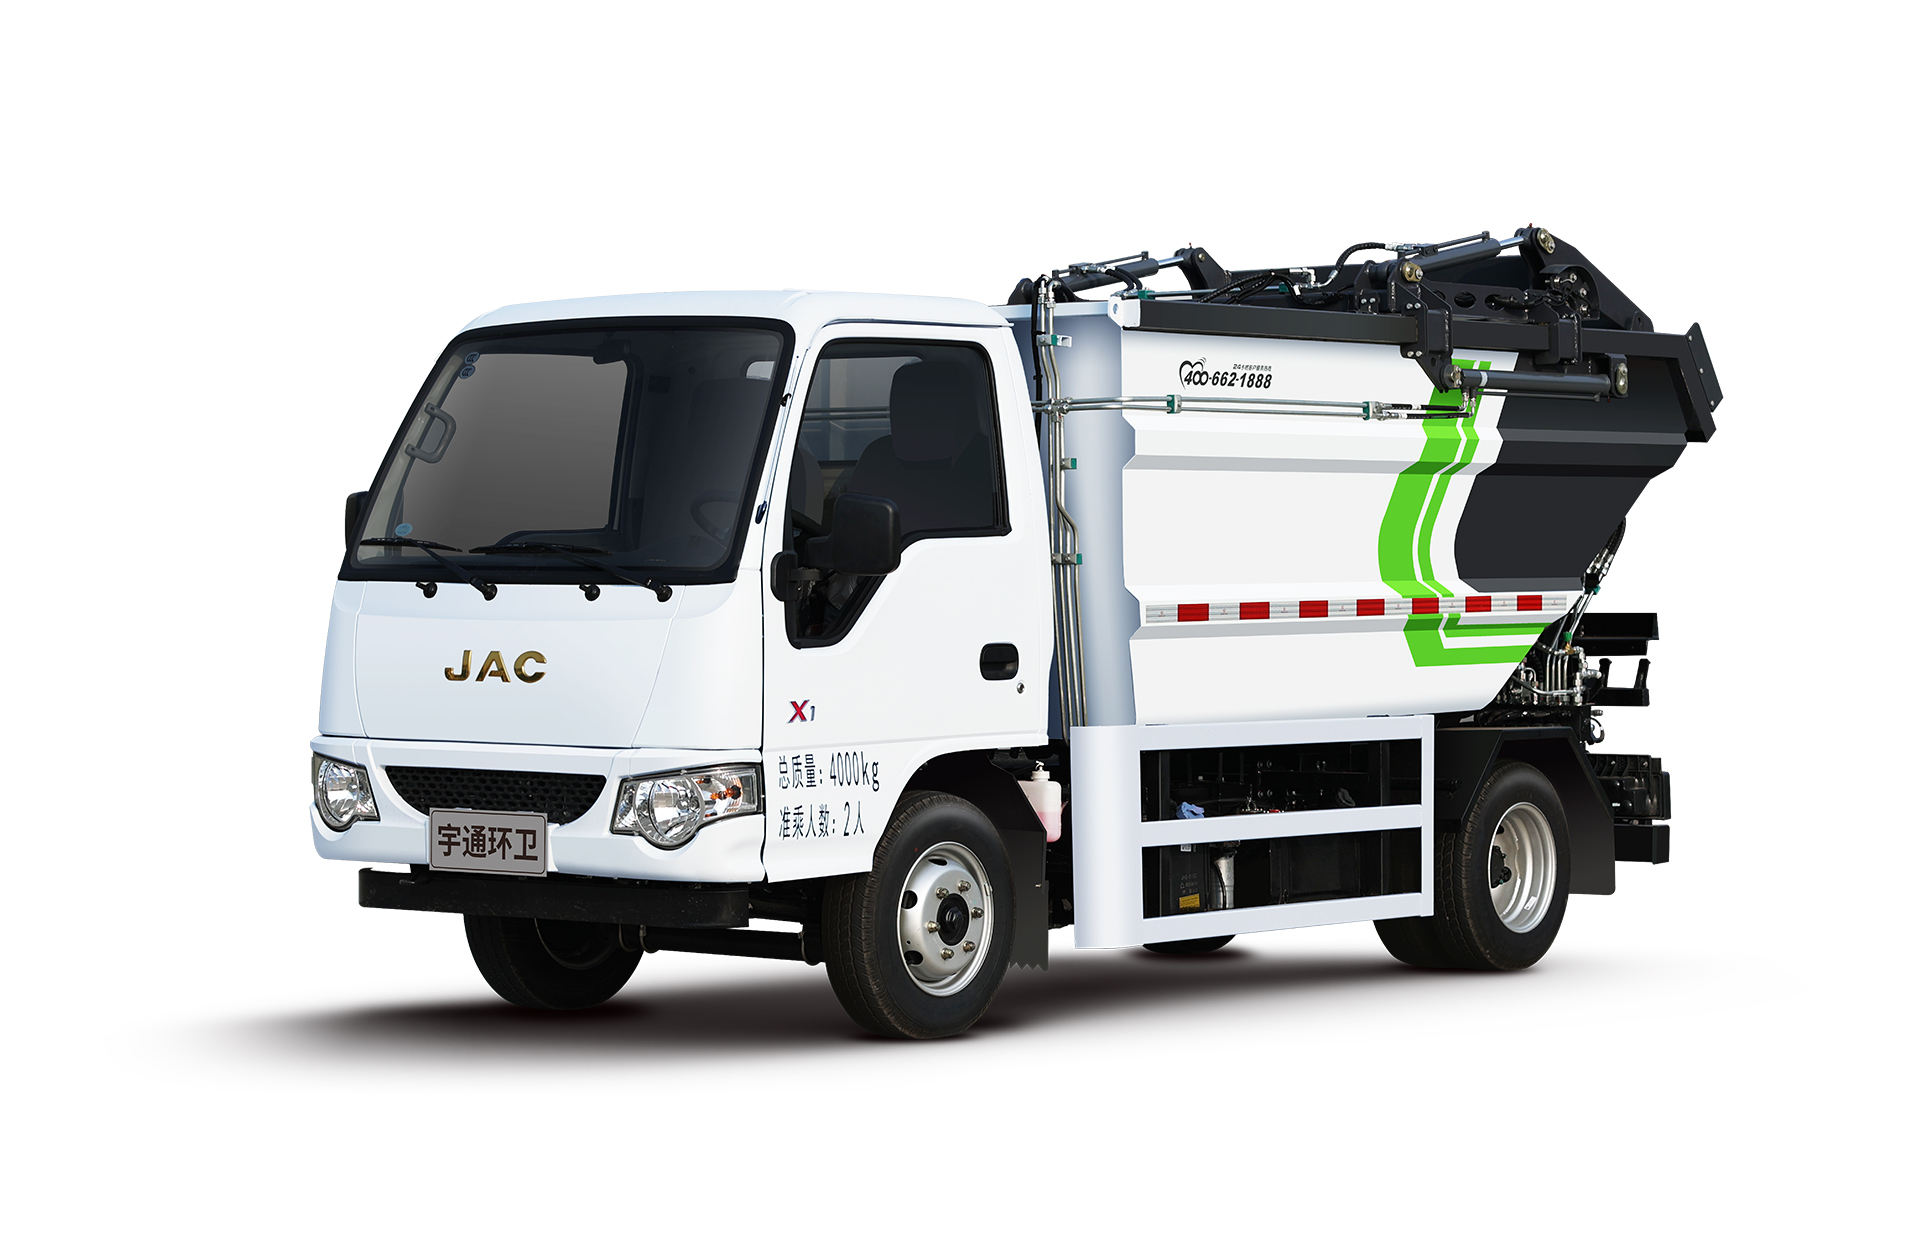 4t自裝卸式垃圾車 宇通環衛自裝卸式垃圾車主要具備小巧靈活、密封性、裝載能力強等主要特點。